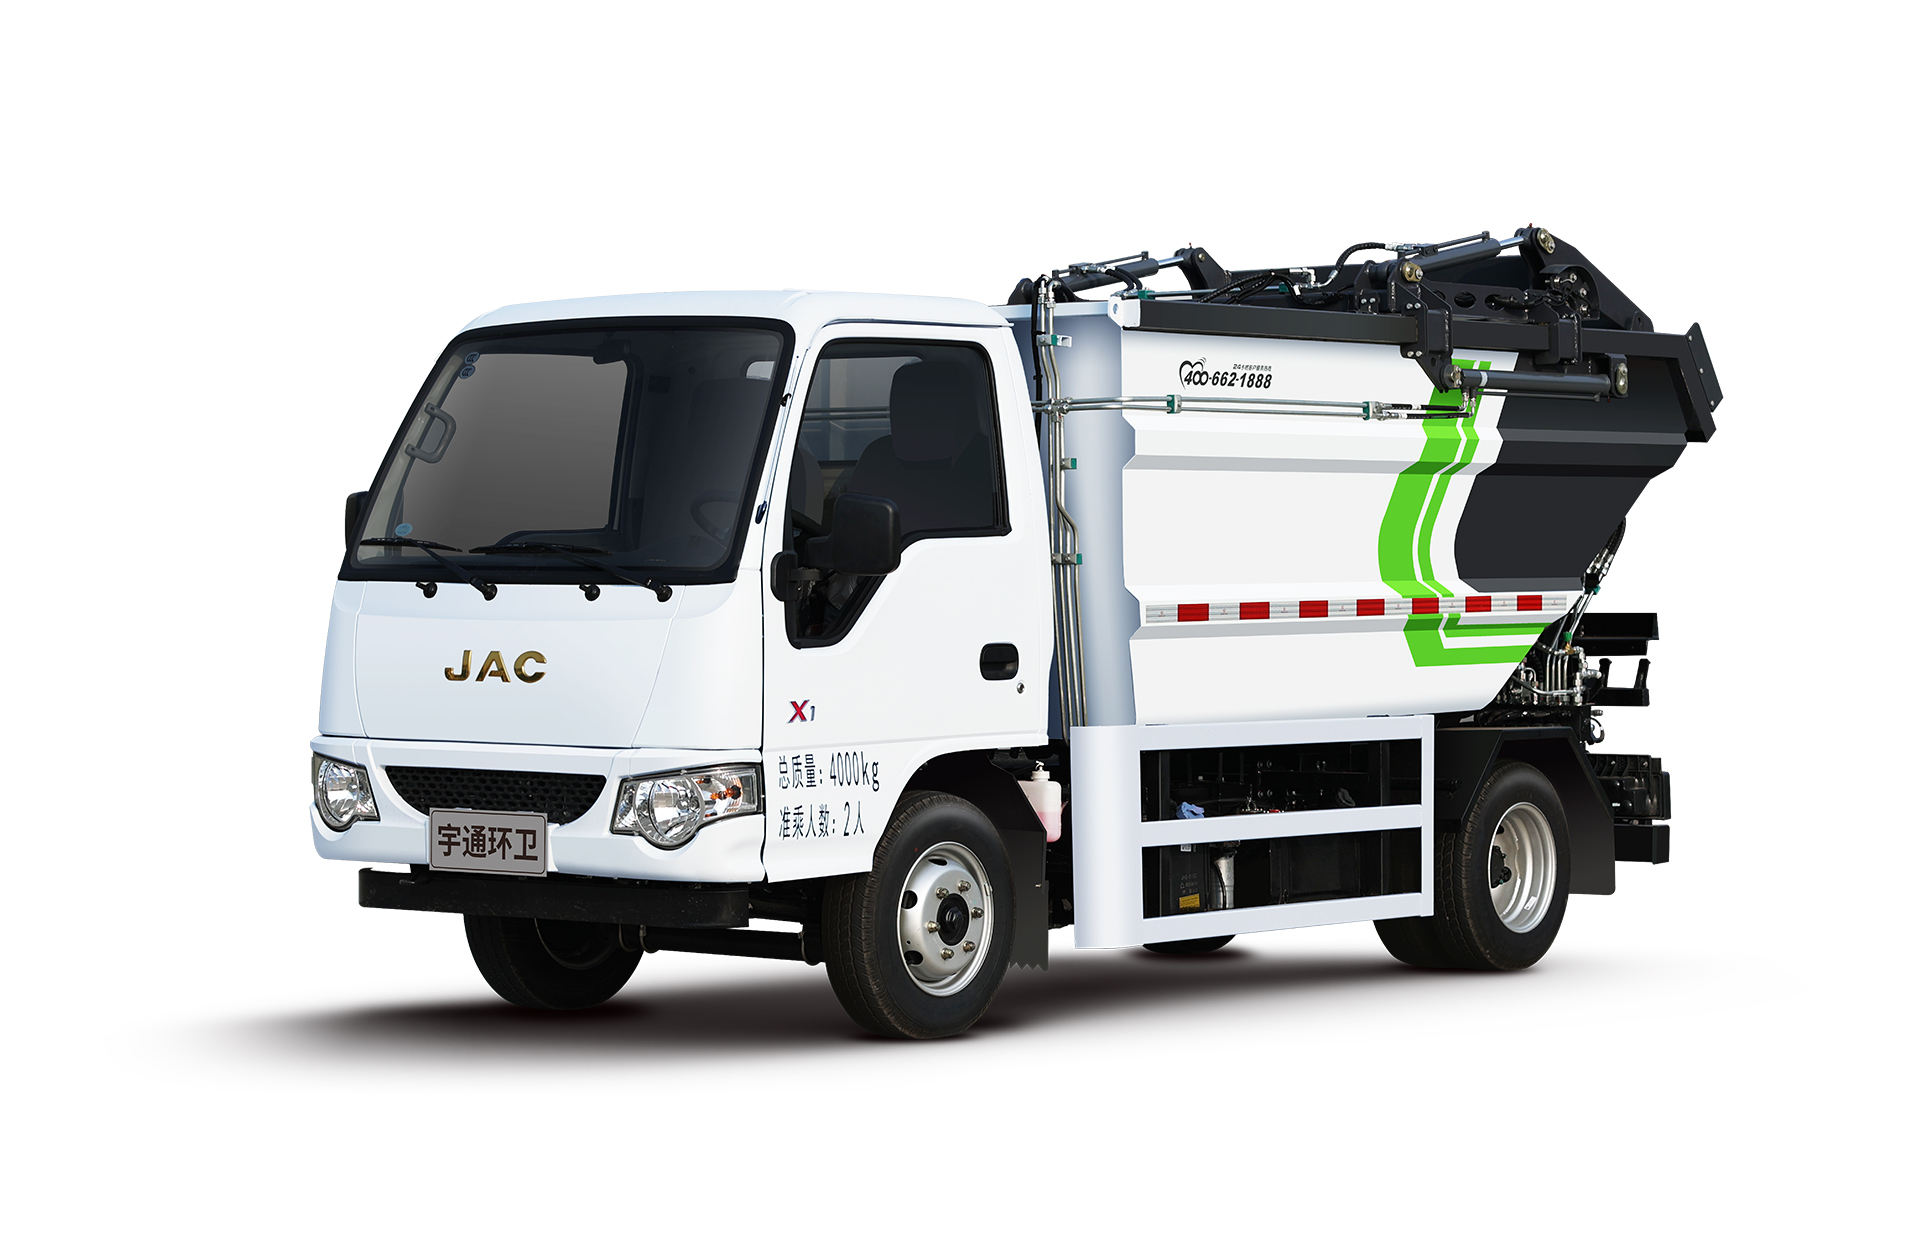 4t自裝卸式垃圾車 宇通環衛自裝卸式垃圾車主要具備小巧靈活、密封性、裝載能力強等主要特點。